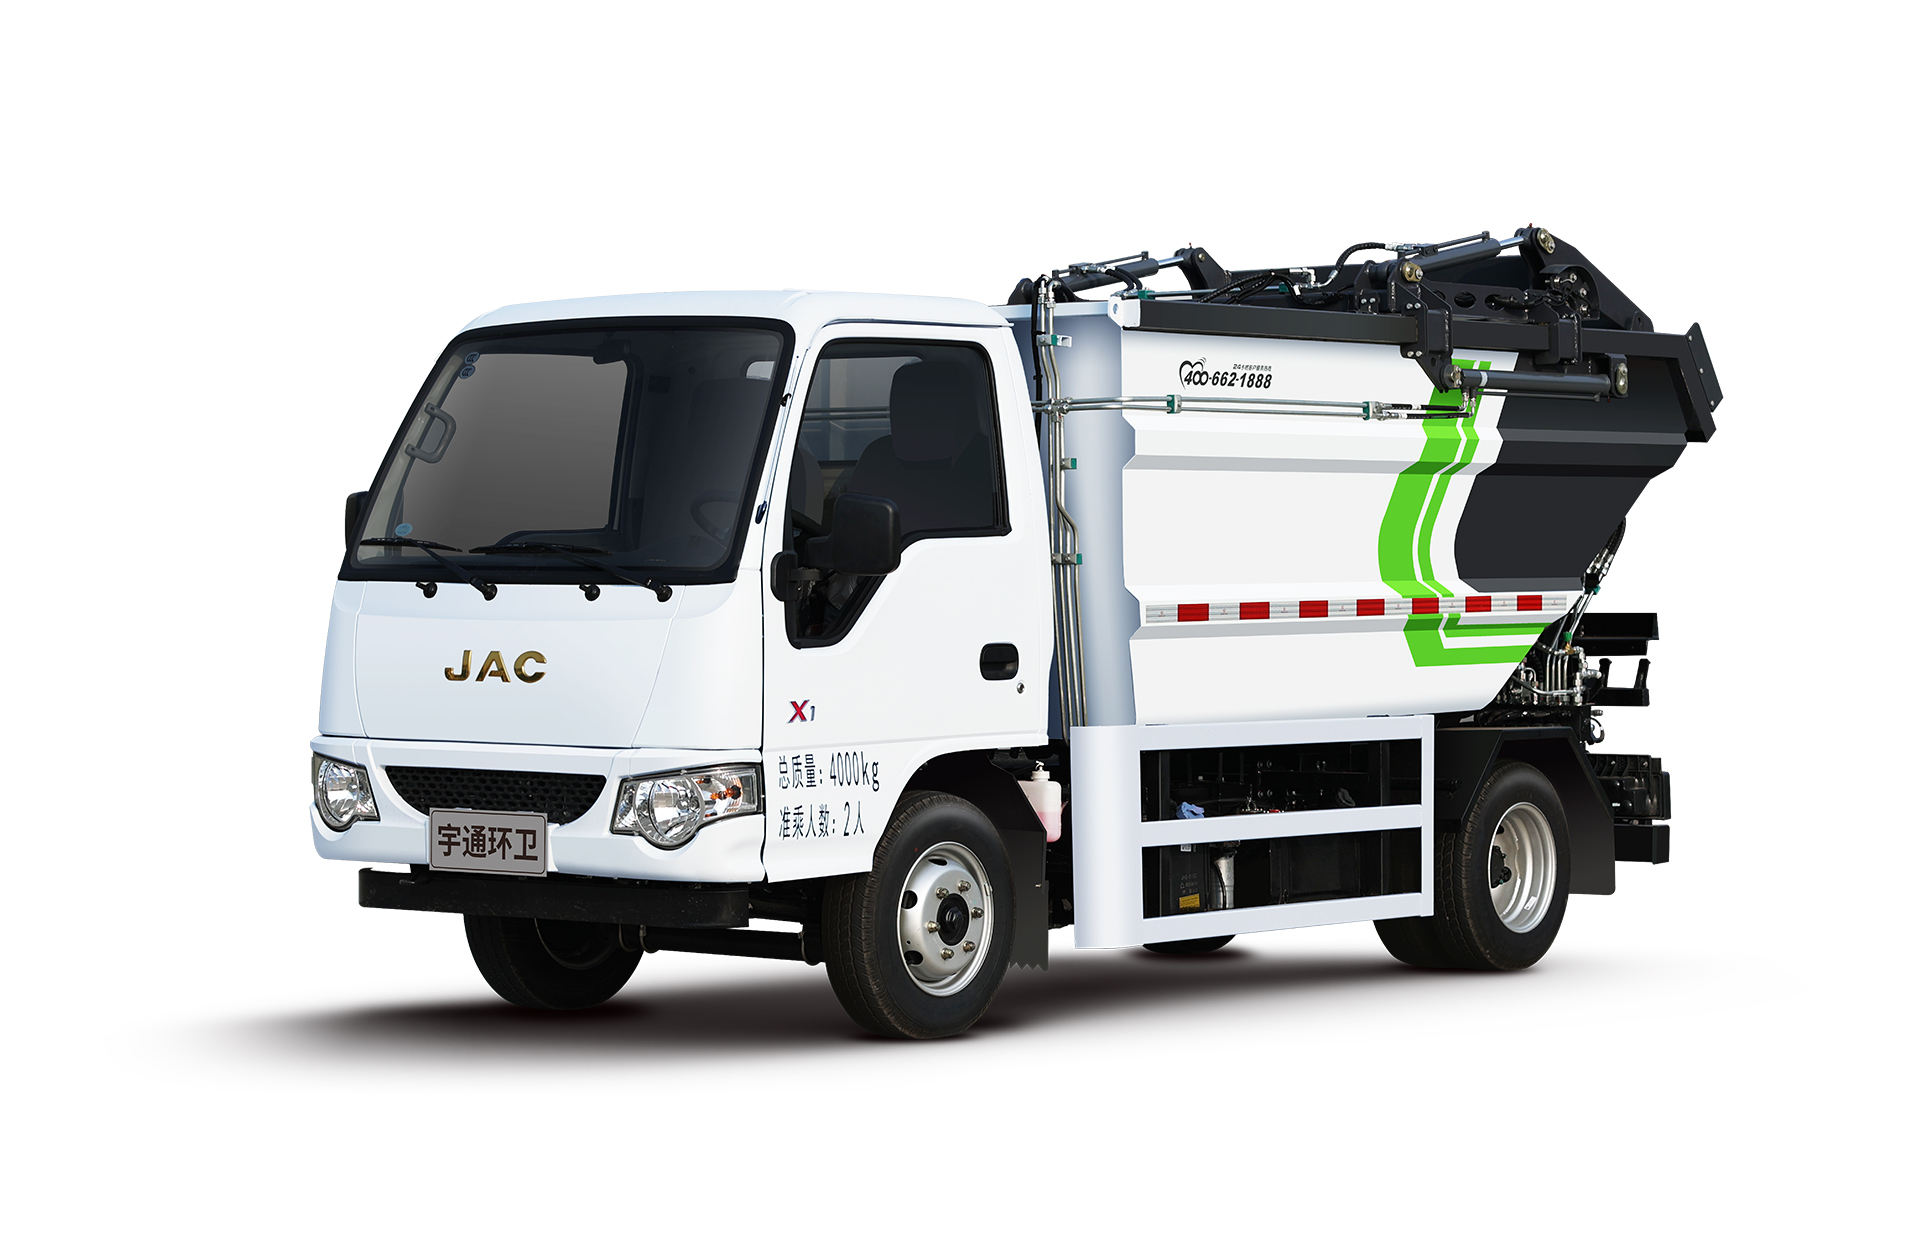 4t自裝卸式垃圾車 宇通環衛自裝卸式垃圾車主要具備小巧靈活、密封性、裝載能力強等主要特點。